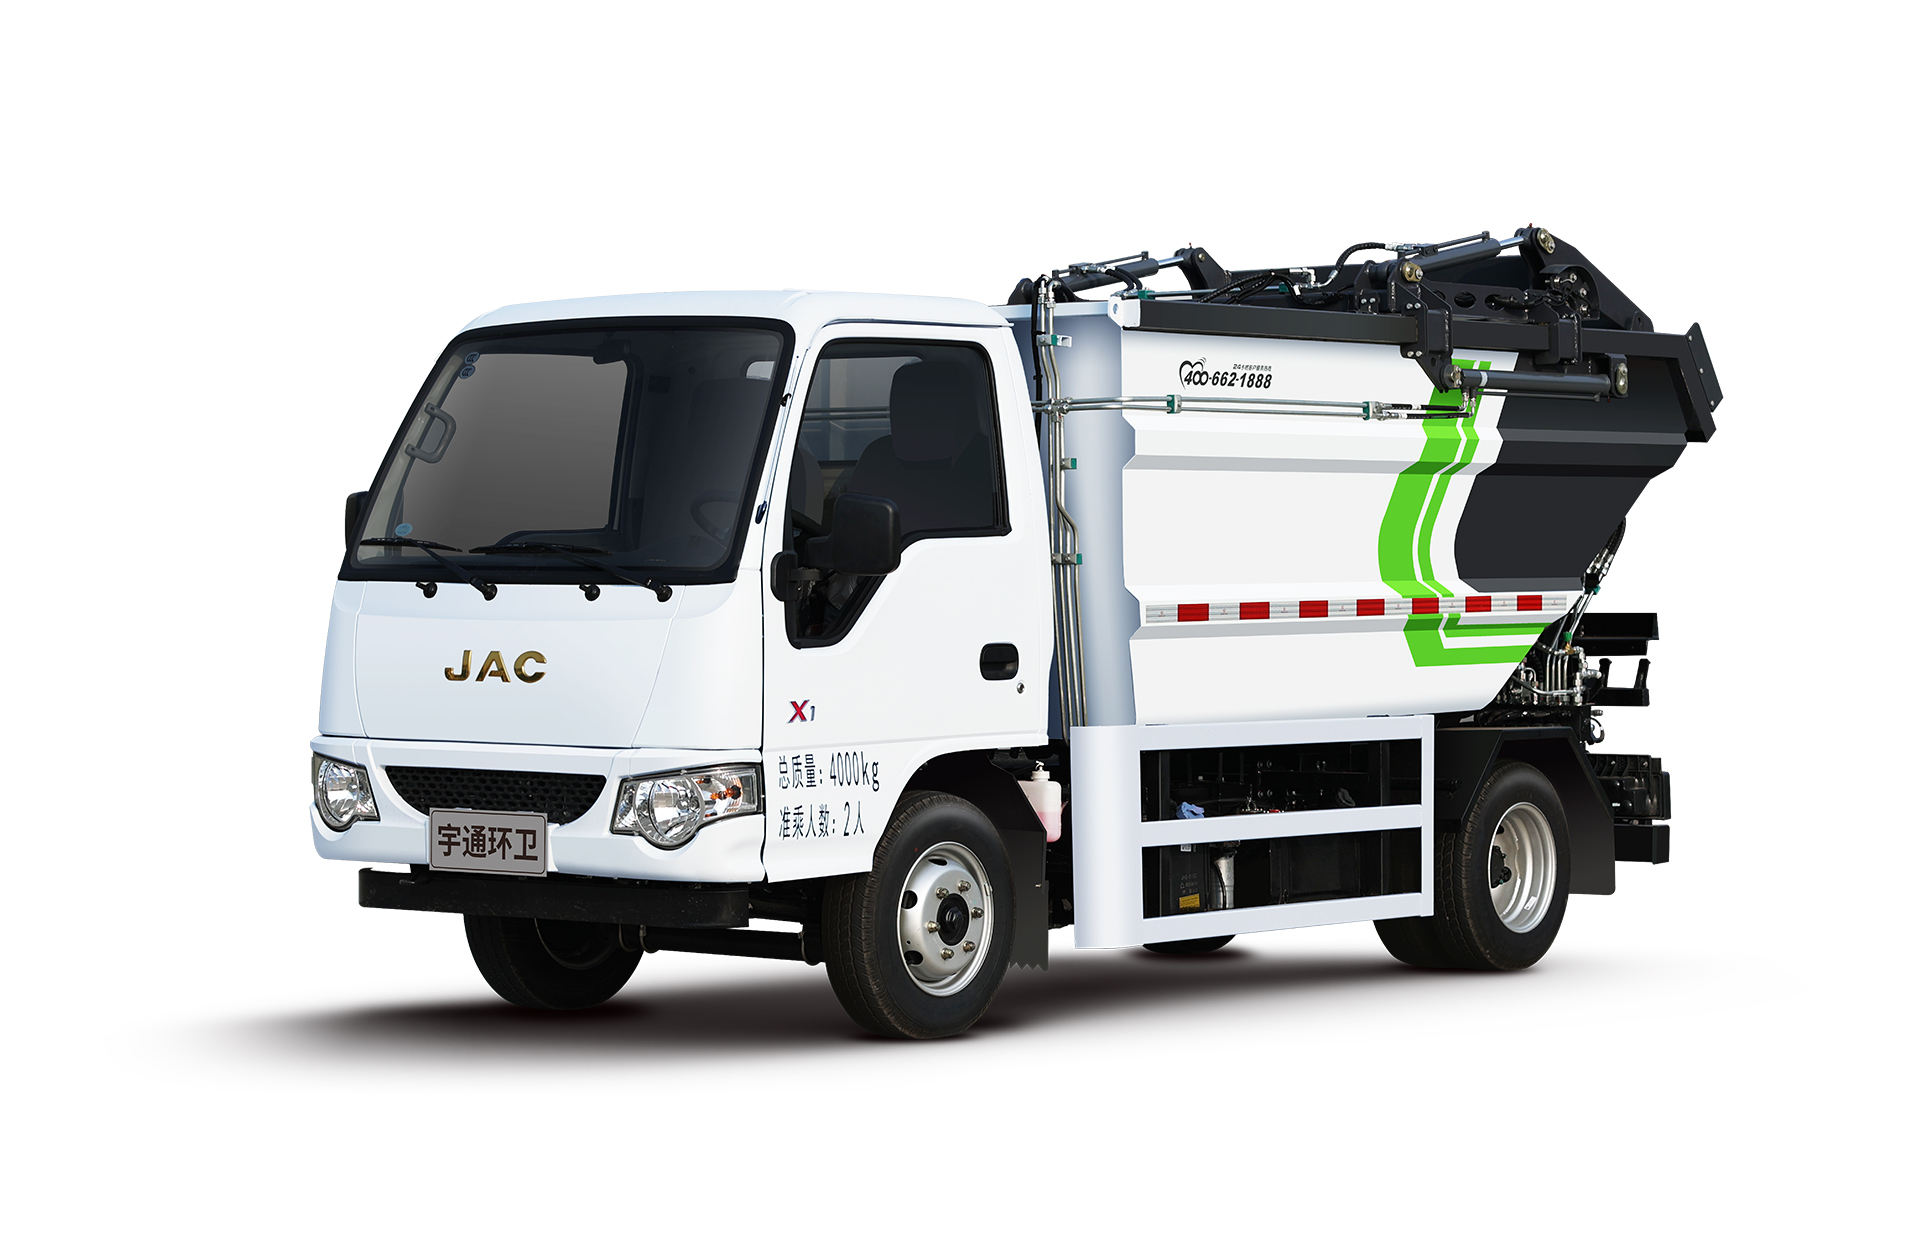 4t自裝卸式垃圾車 宇通環衛自裝卸式垃圾車主要具備小巧靈活、密封性、裝載能力強等主要特點。